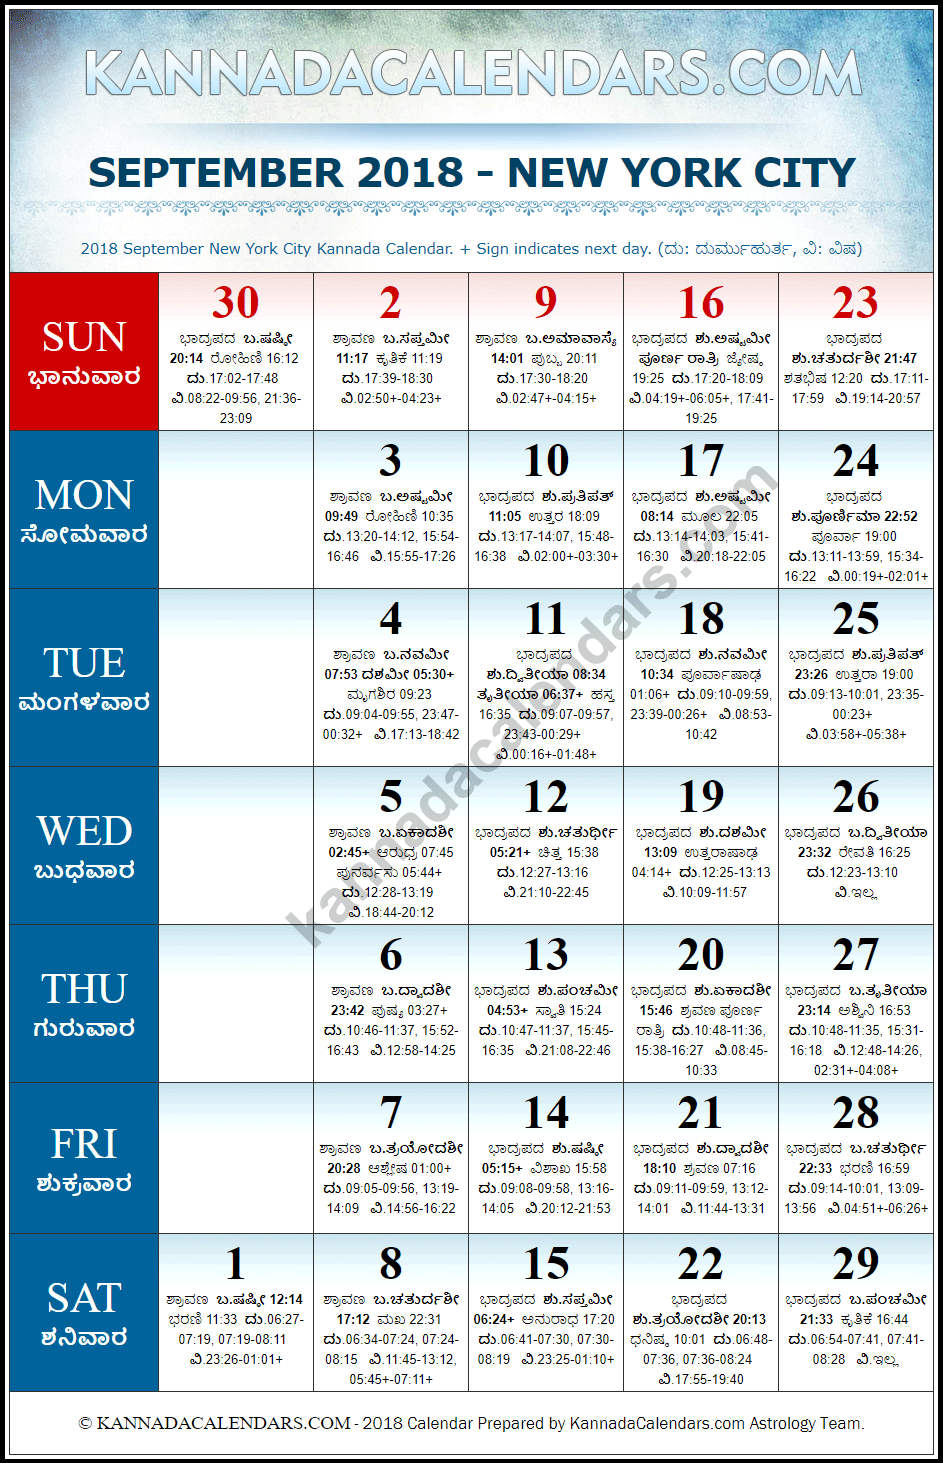 September 2018 Kannada Calendar for New York, USA